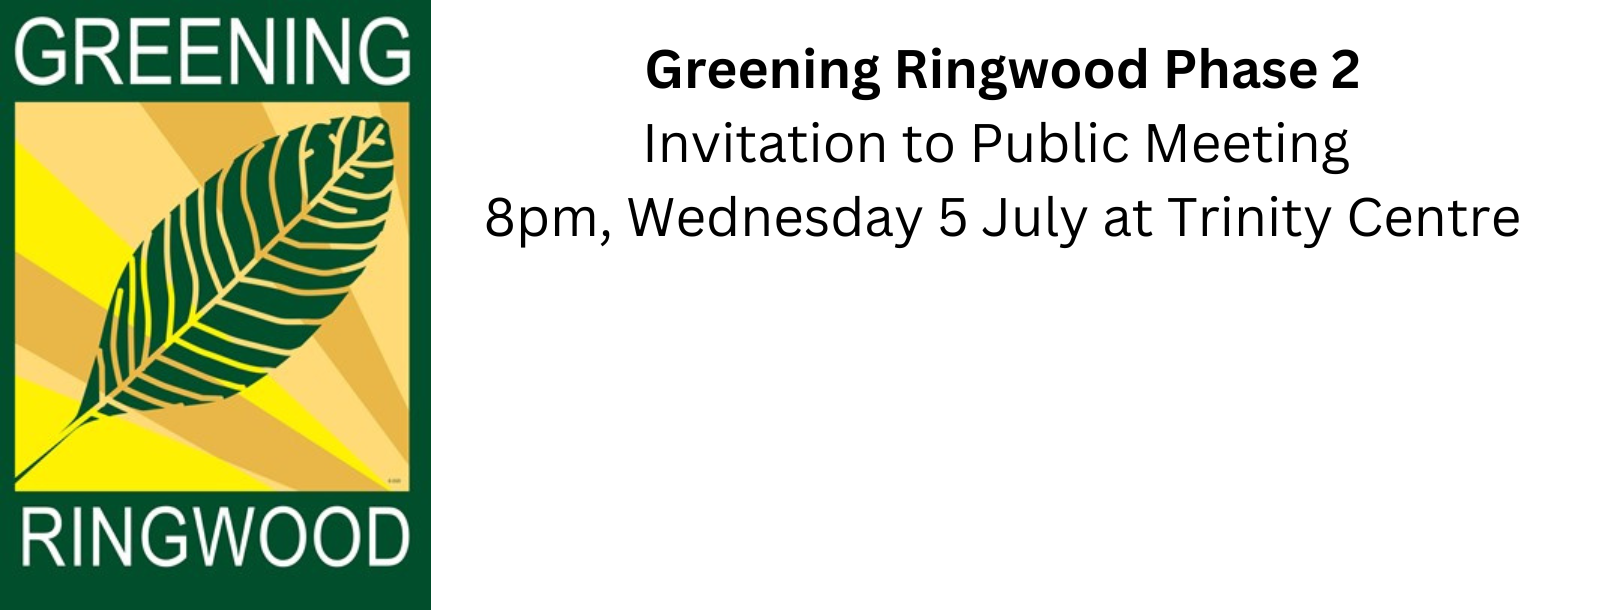 Greening Ringwood - Phase 2